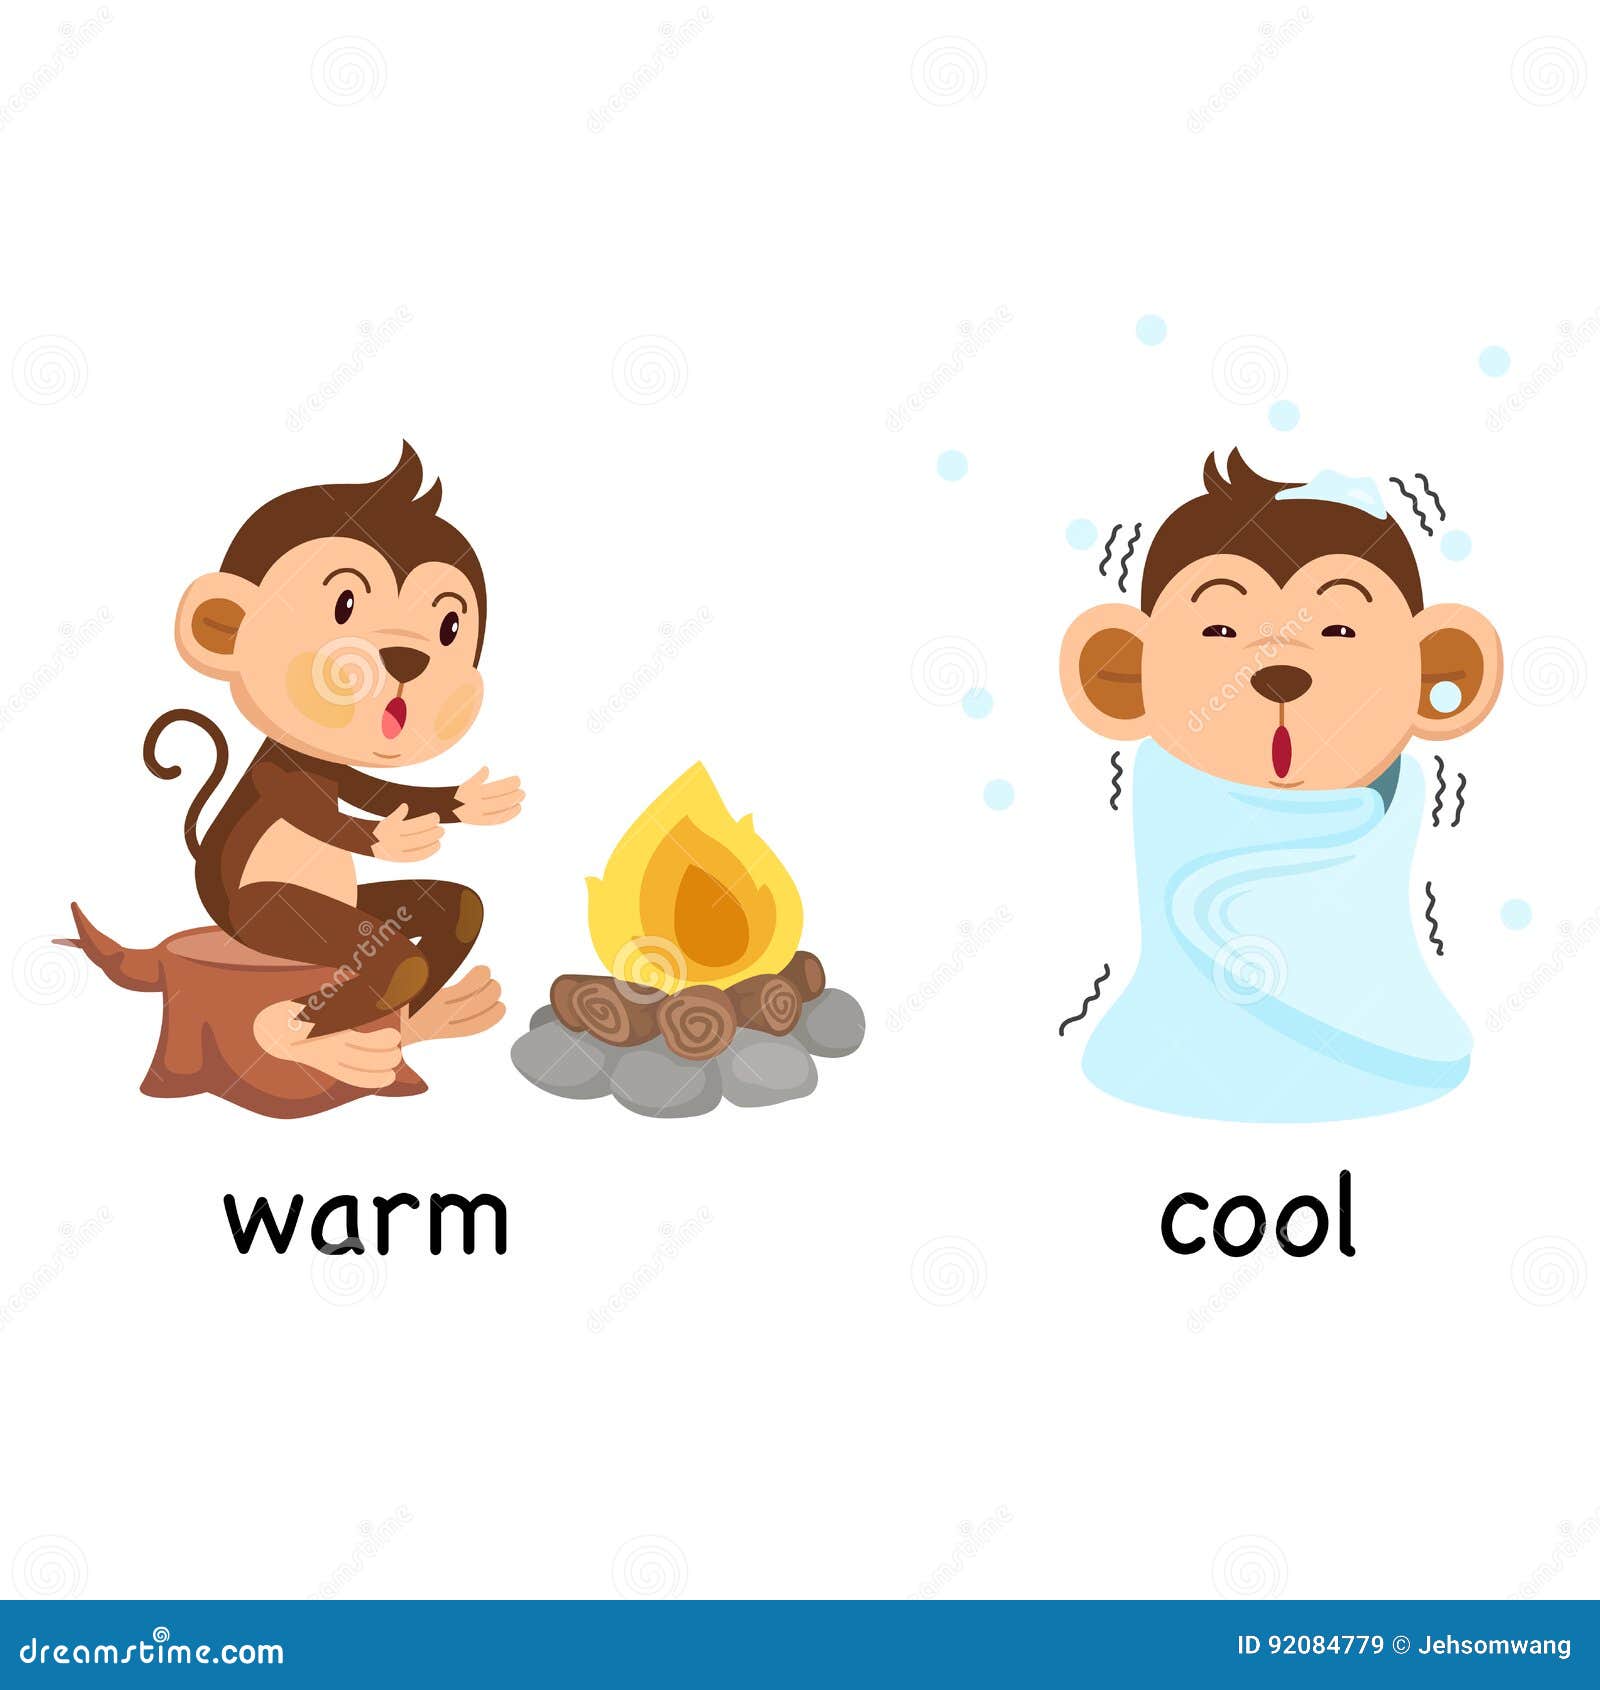 Warm по английски